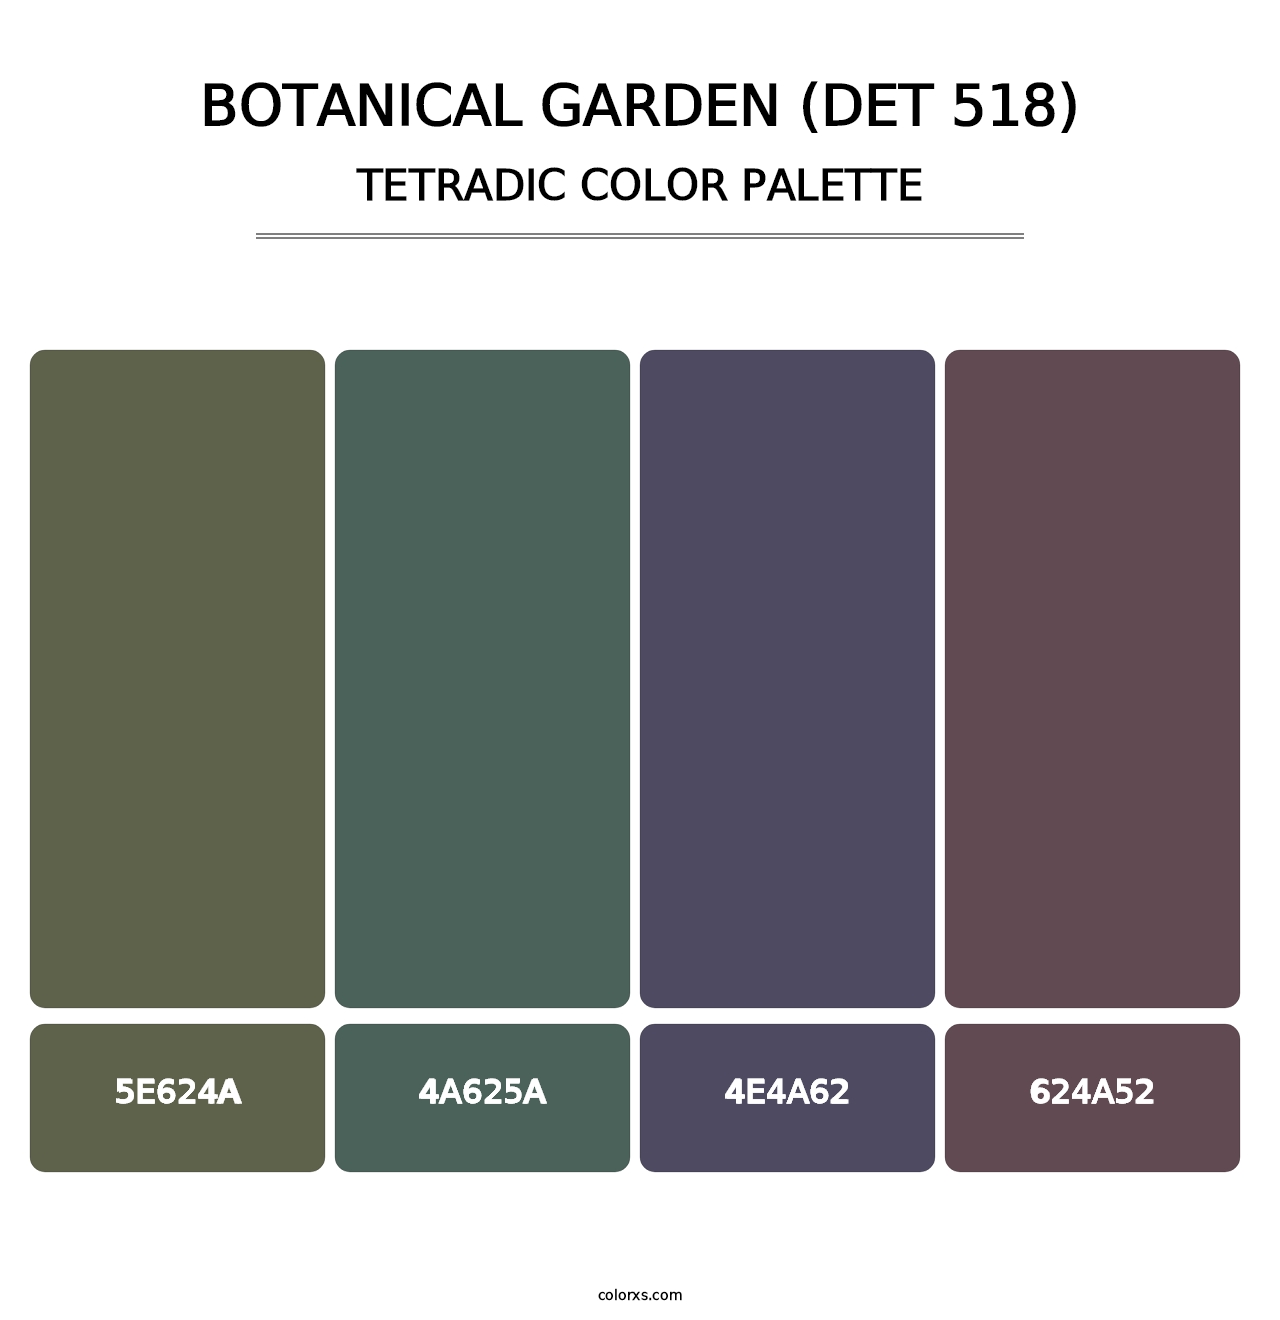 Botanical Garden (DET 518) - Tetradic Color Palette